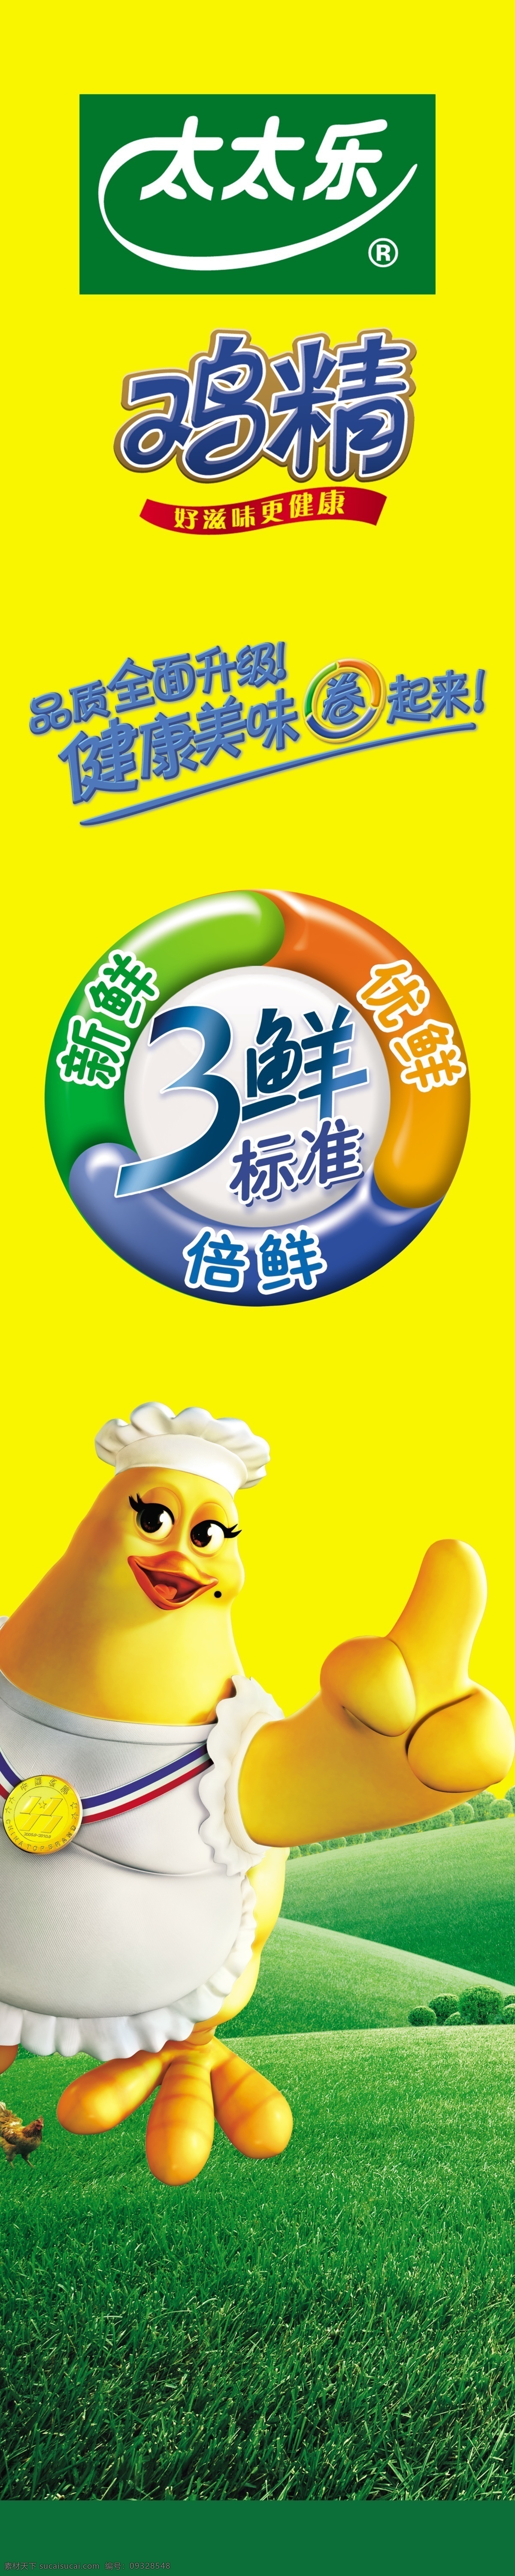 太太乐鸡精 卡通鸡 三鲜标准 太太 乐 logo 广告设计模板 源文件